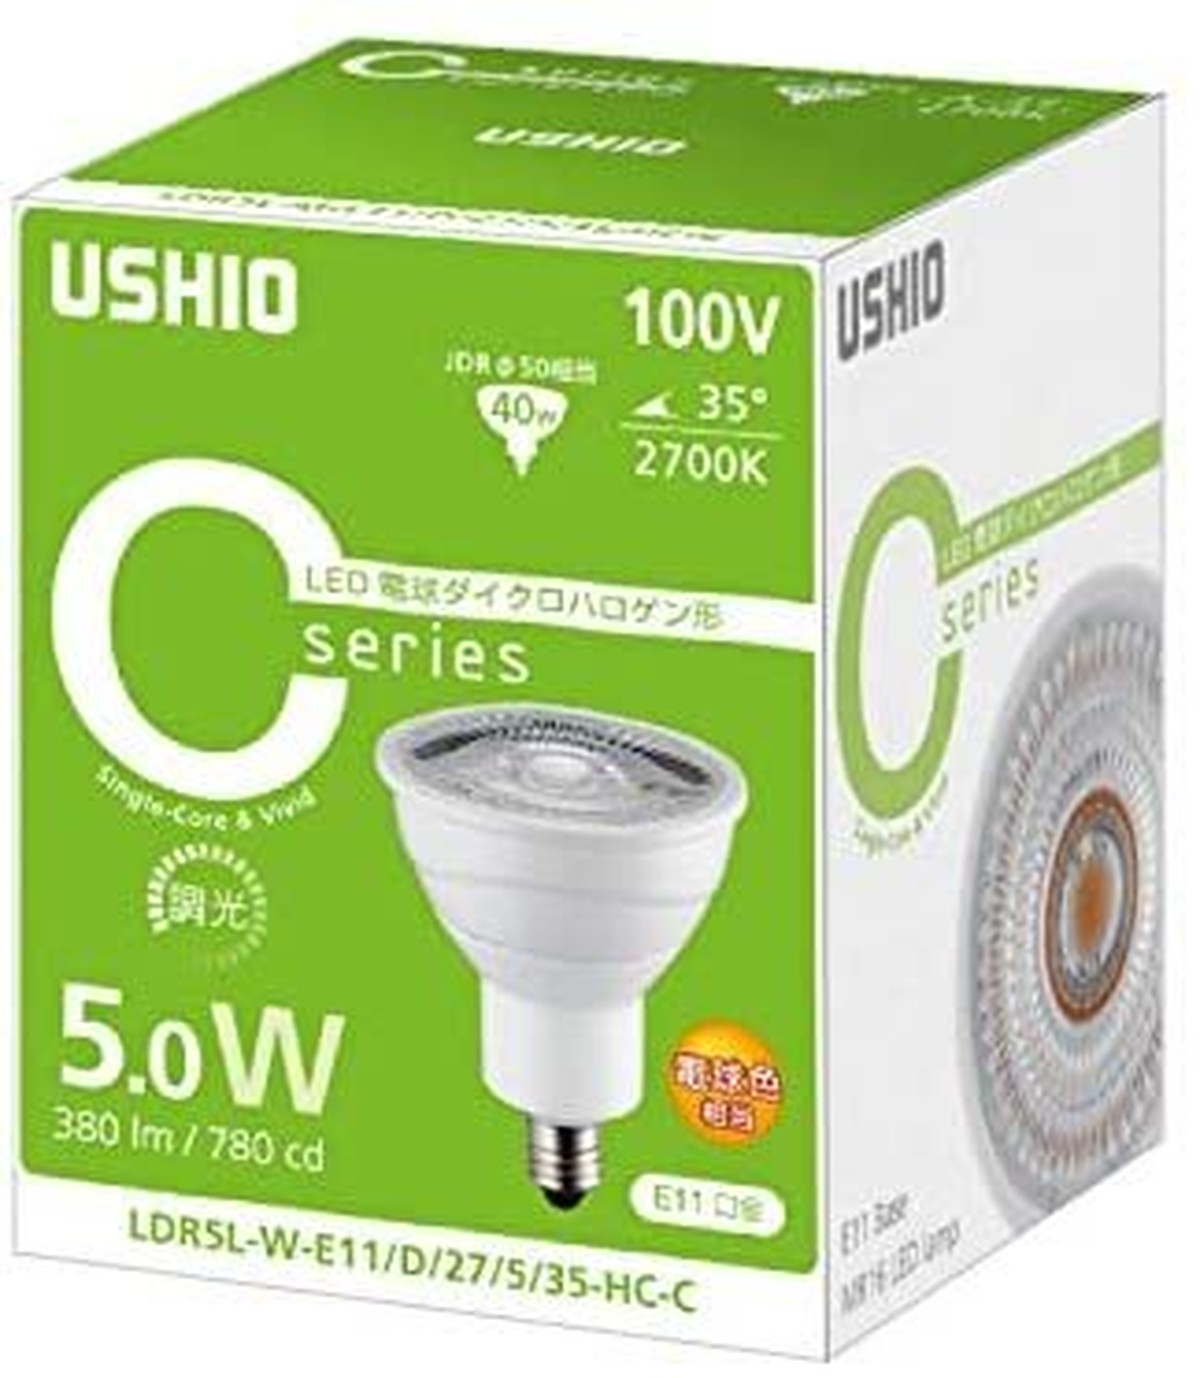 店舗の照明に Ushio Led電球 Ldr5l W E11 D 27 5 35 Hc C タカミエンジ 省エネサポートセンター